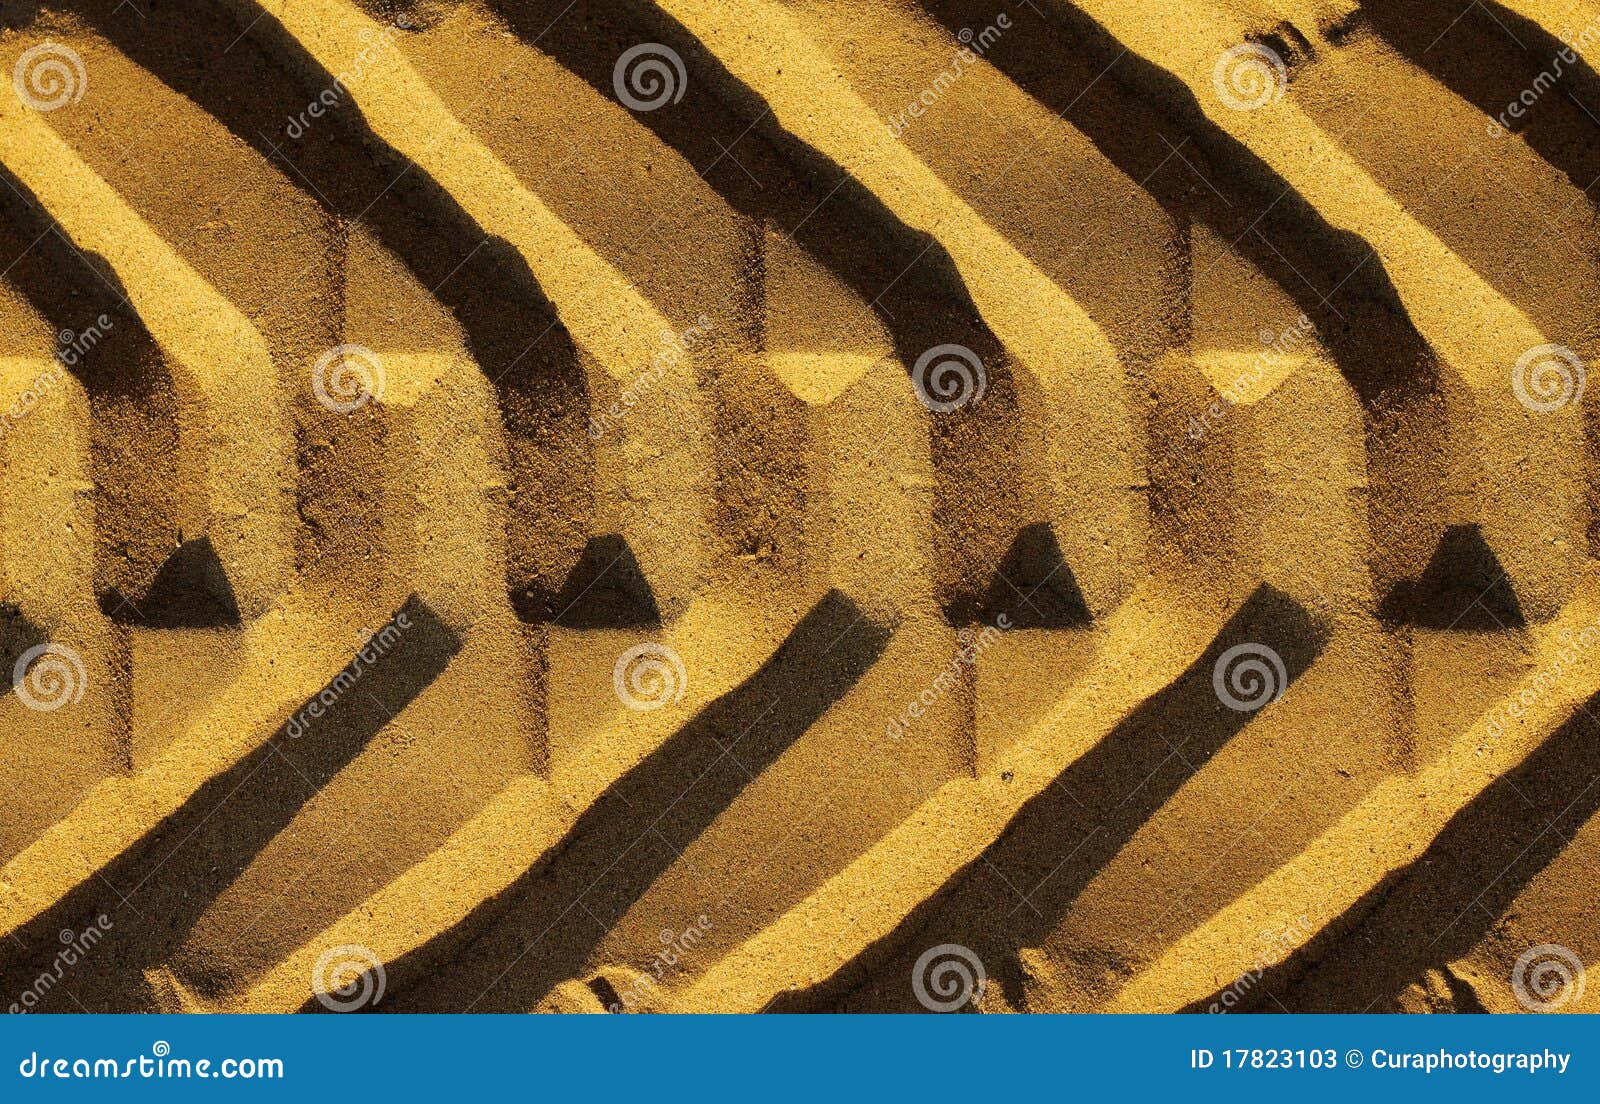 Het spoor van de band. Grafische foto van een breed bandspoor in gouden zand